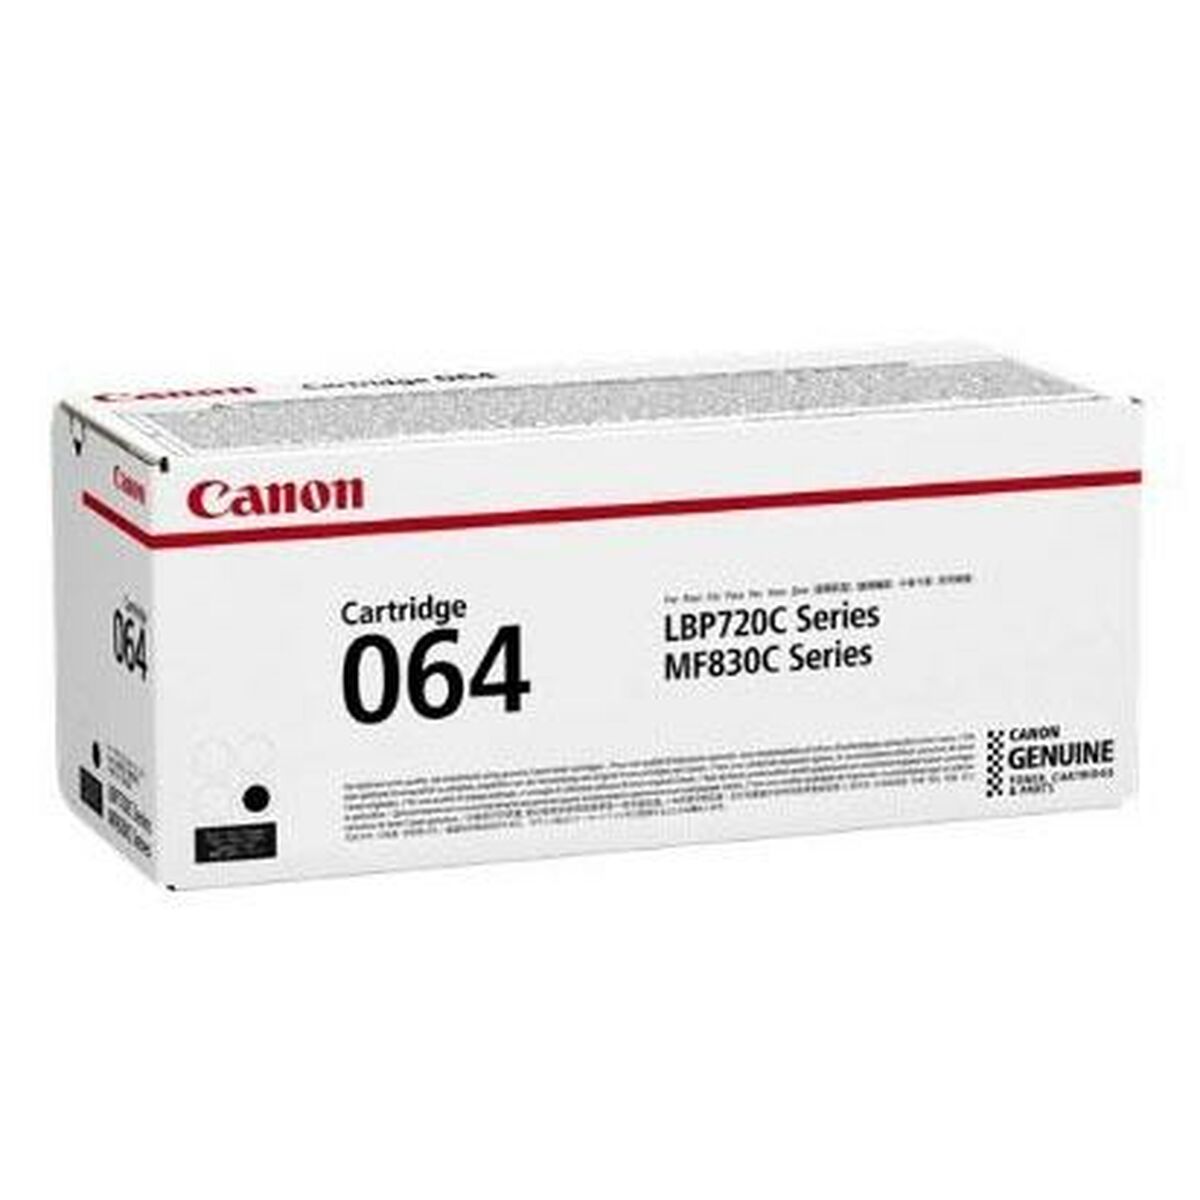 Osta tuote Väriaine Canon 064 Musta verkkokaupastamme Korhone: Tietokoneet & Elektroniikka 10% alennuksella koodilla KORHONE